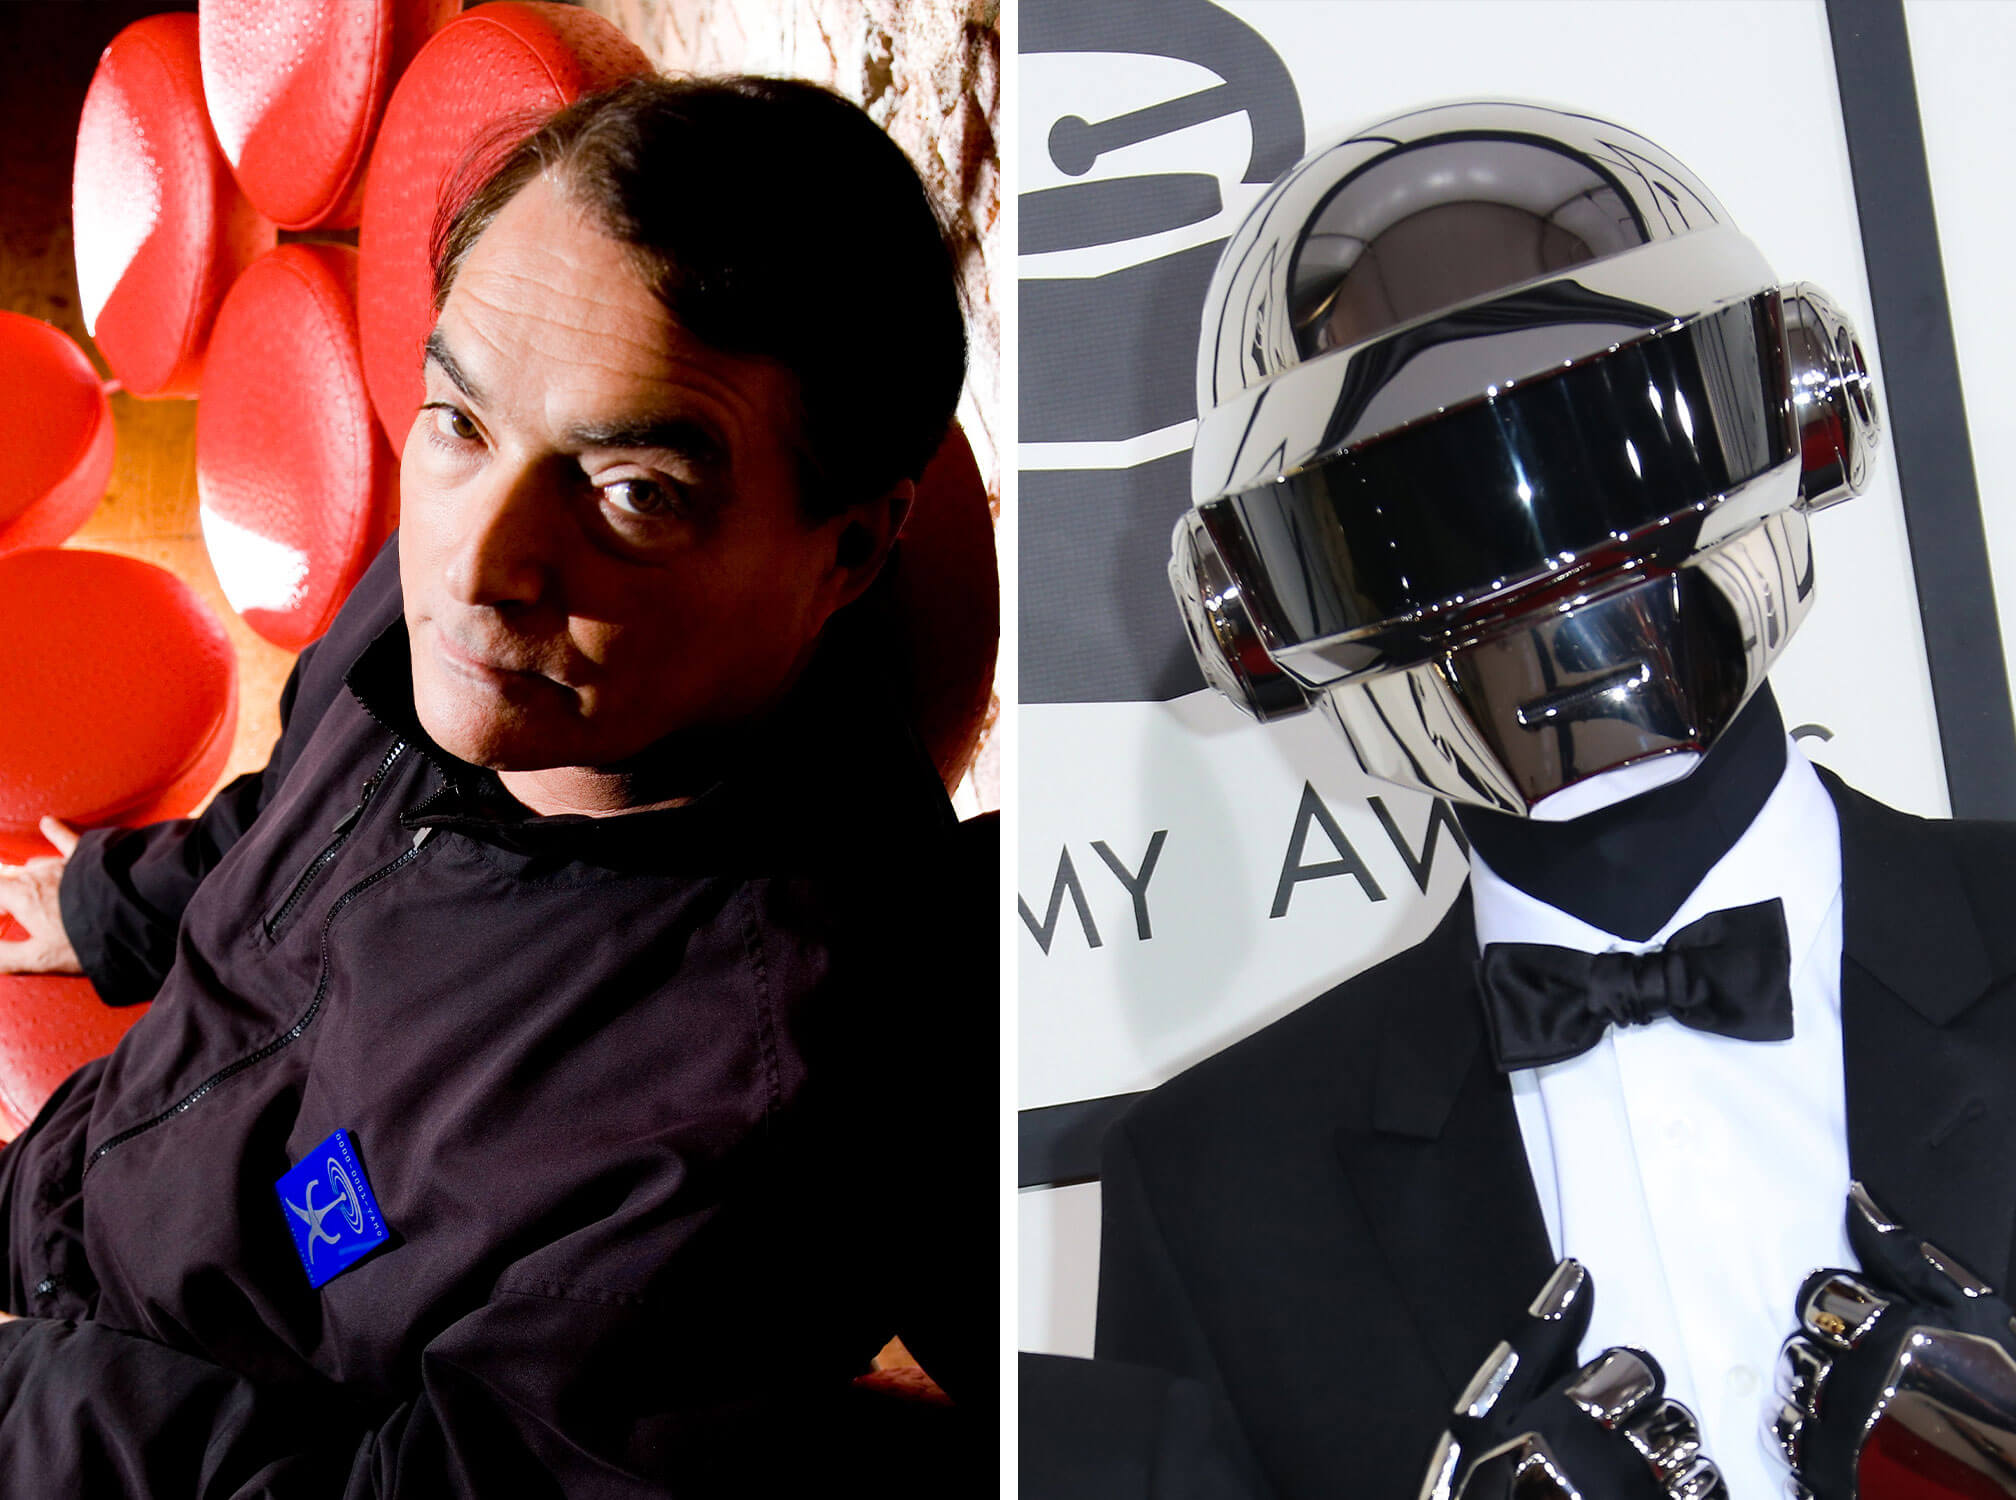 Daft Punk's Thomas Bangalter and Kraftwerk's Wolfgang Flür